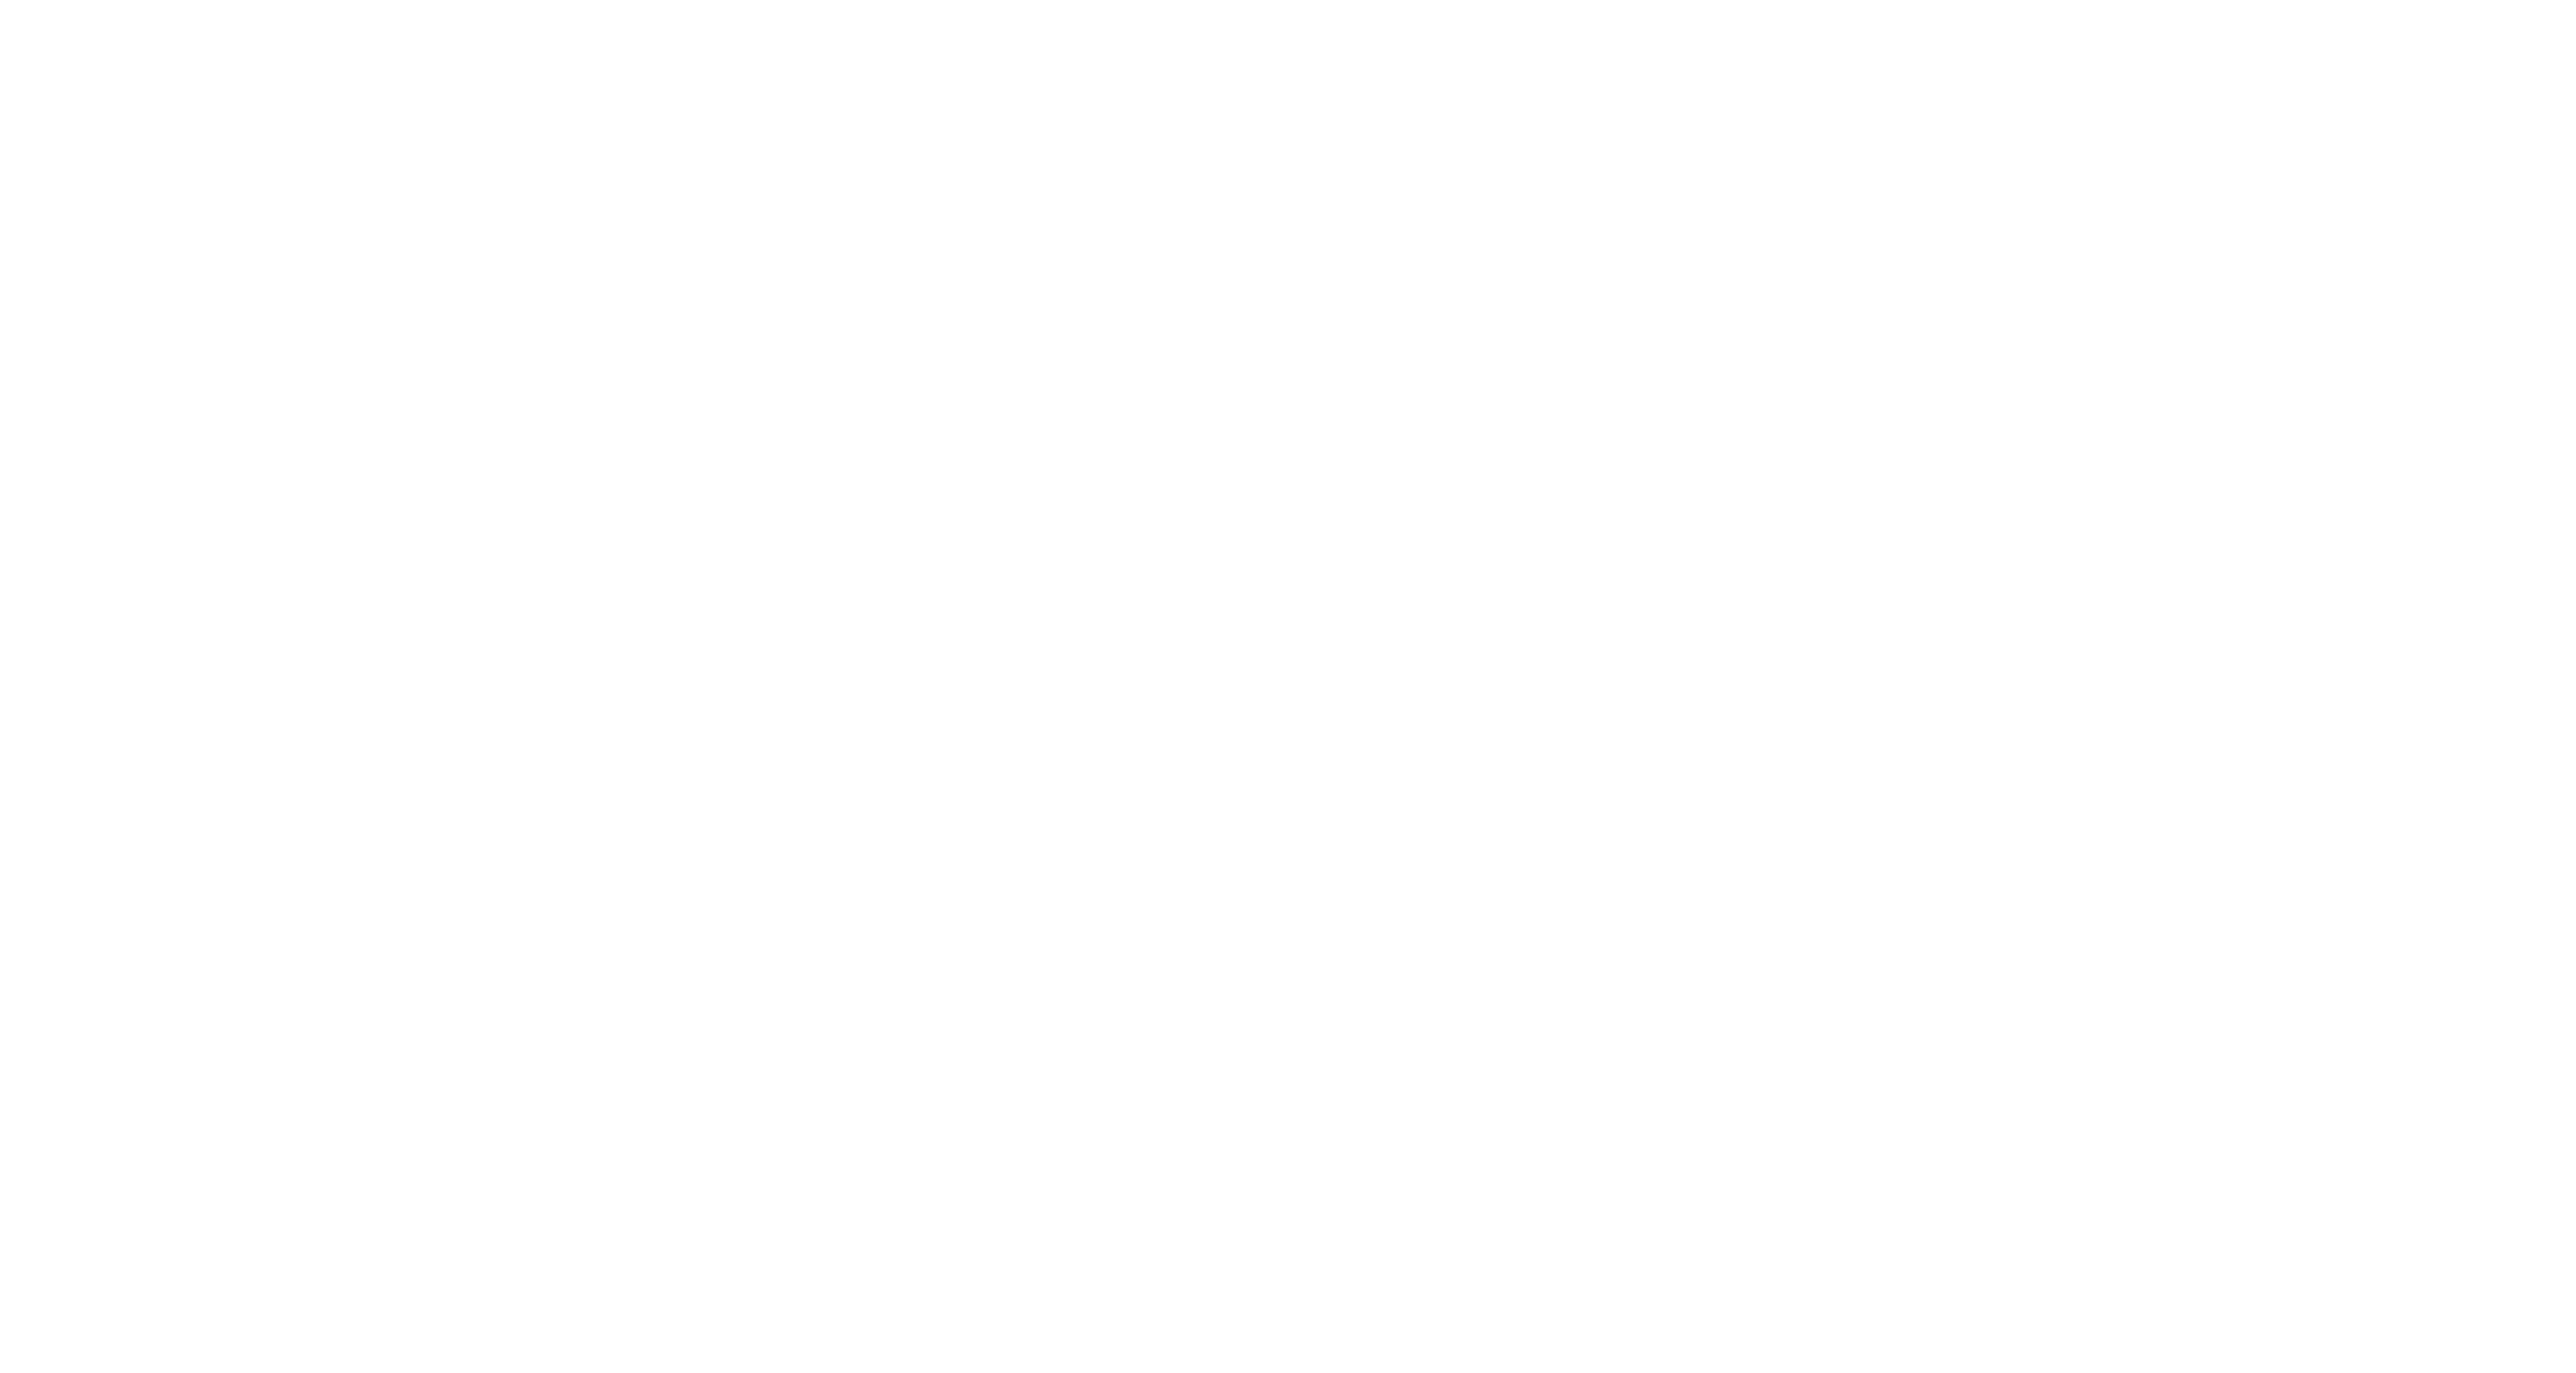 Rocket League Esports Rocket League Esports